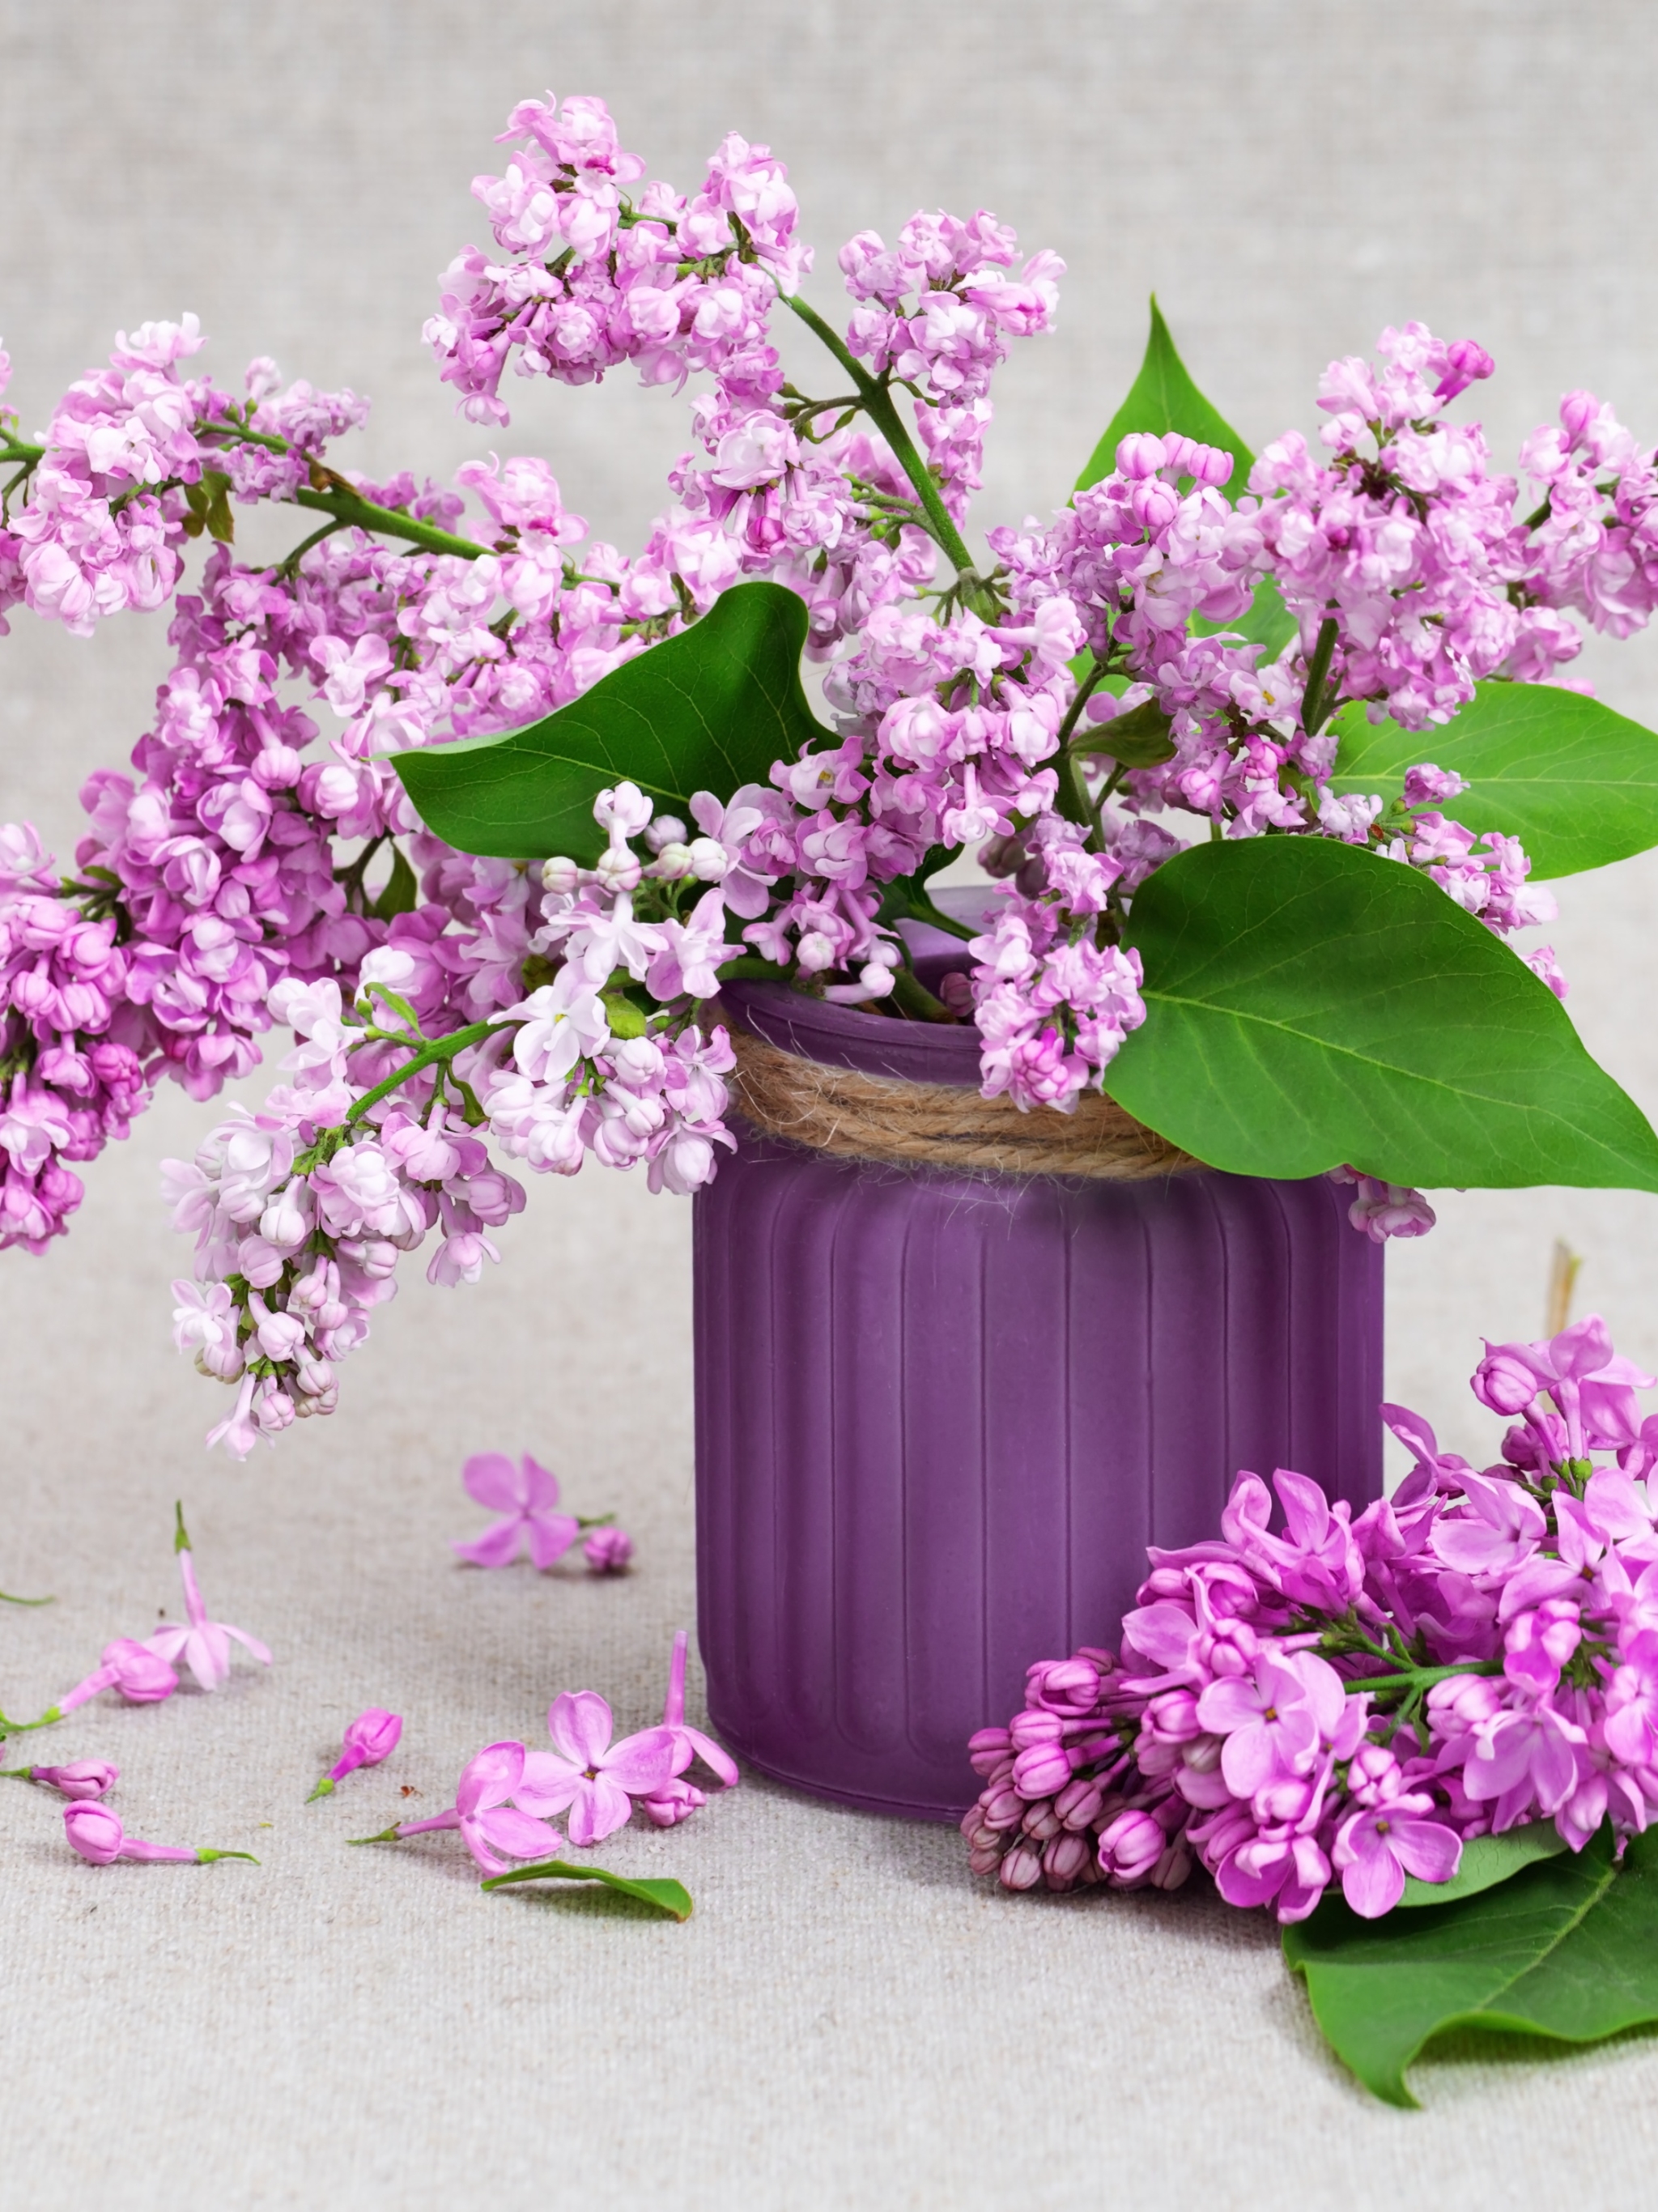 Download mobile wallpaper Lilac, Flower, Leaf, Jar, Man Made for free.